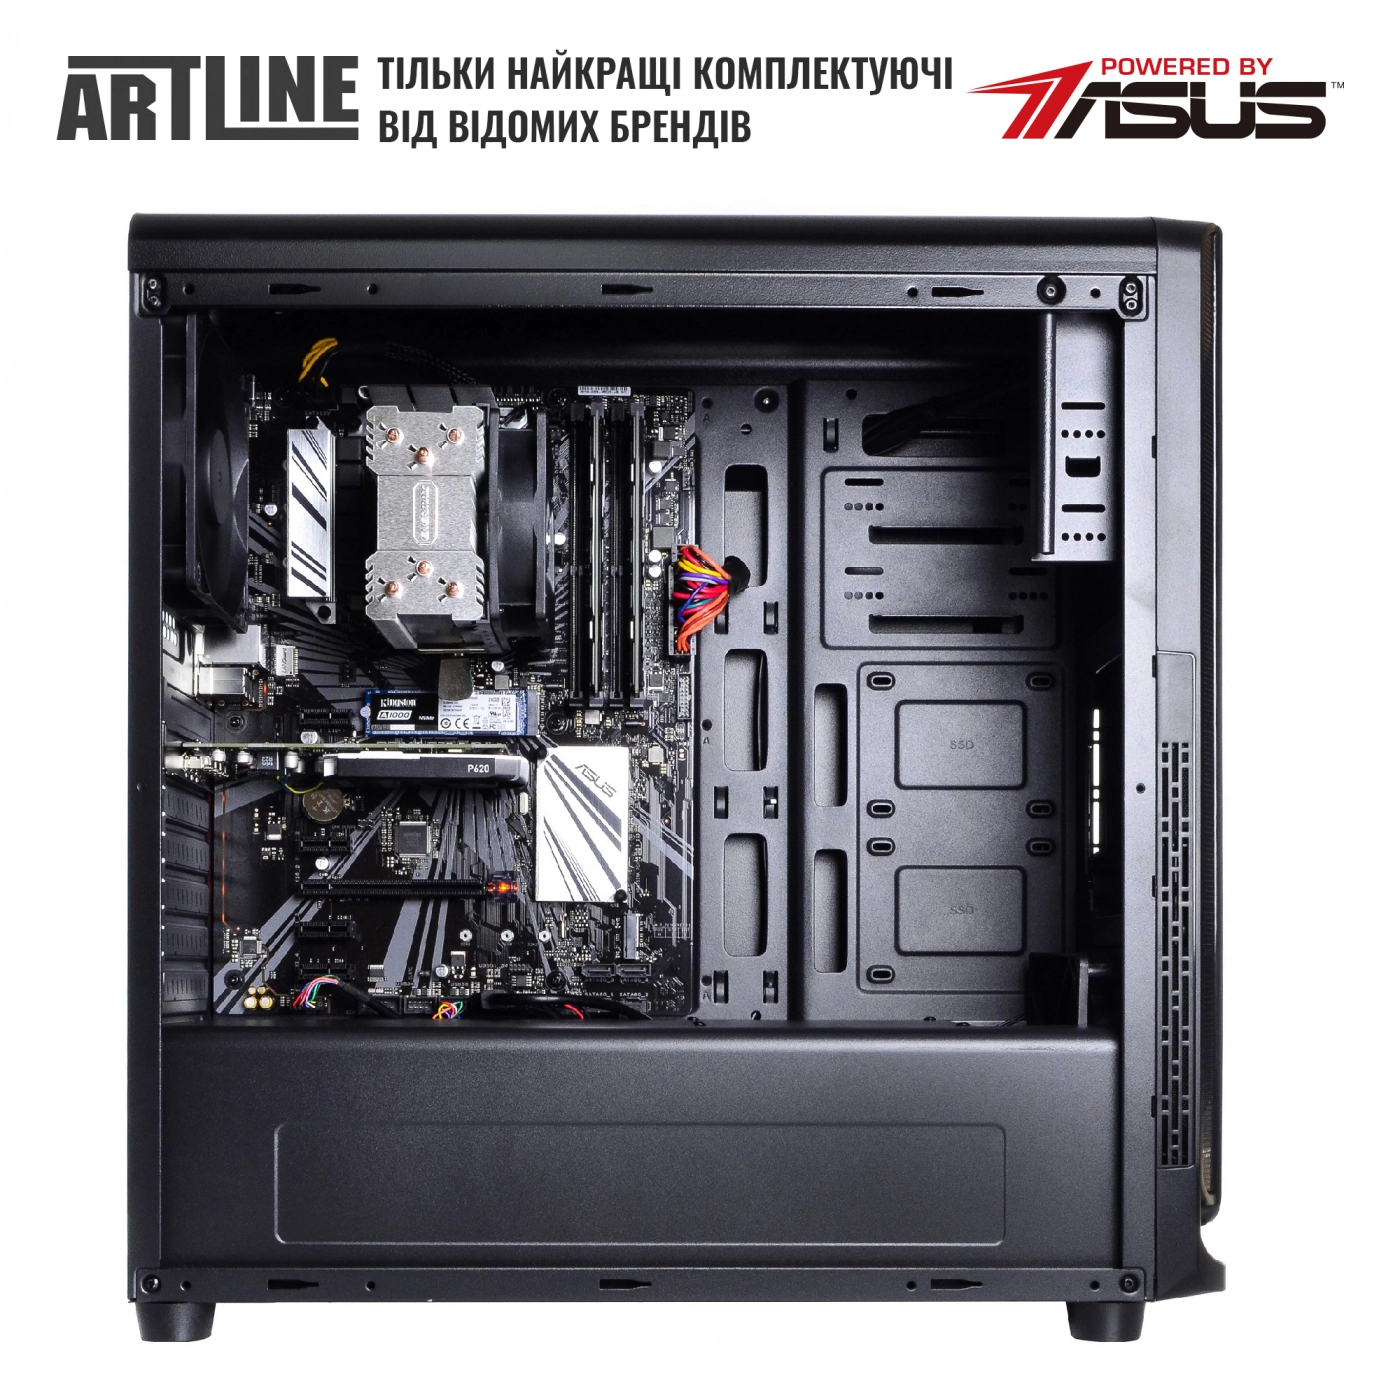 Купить Сервер ARTLINE Business T25v20 - фото 5